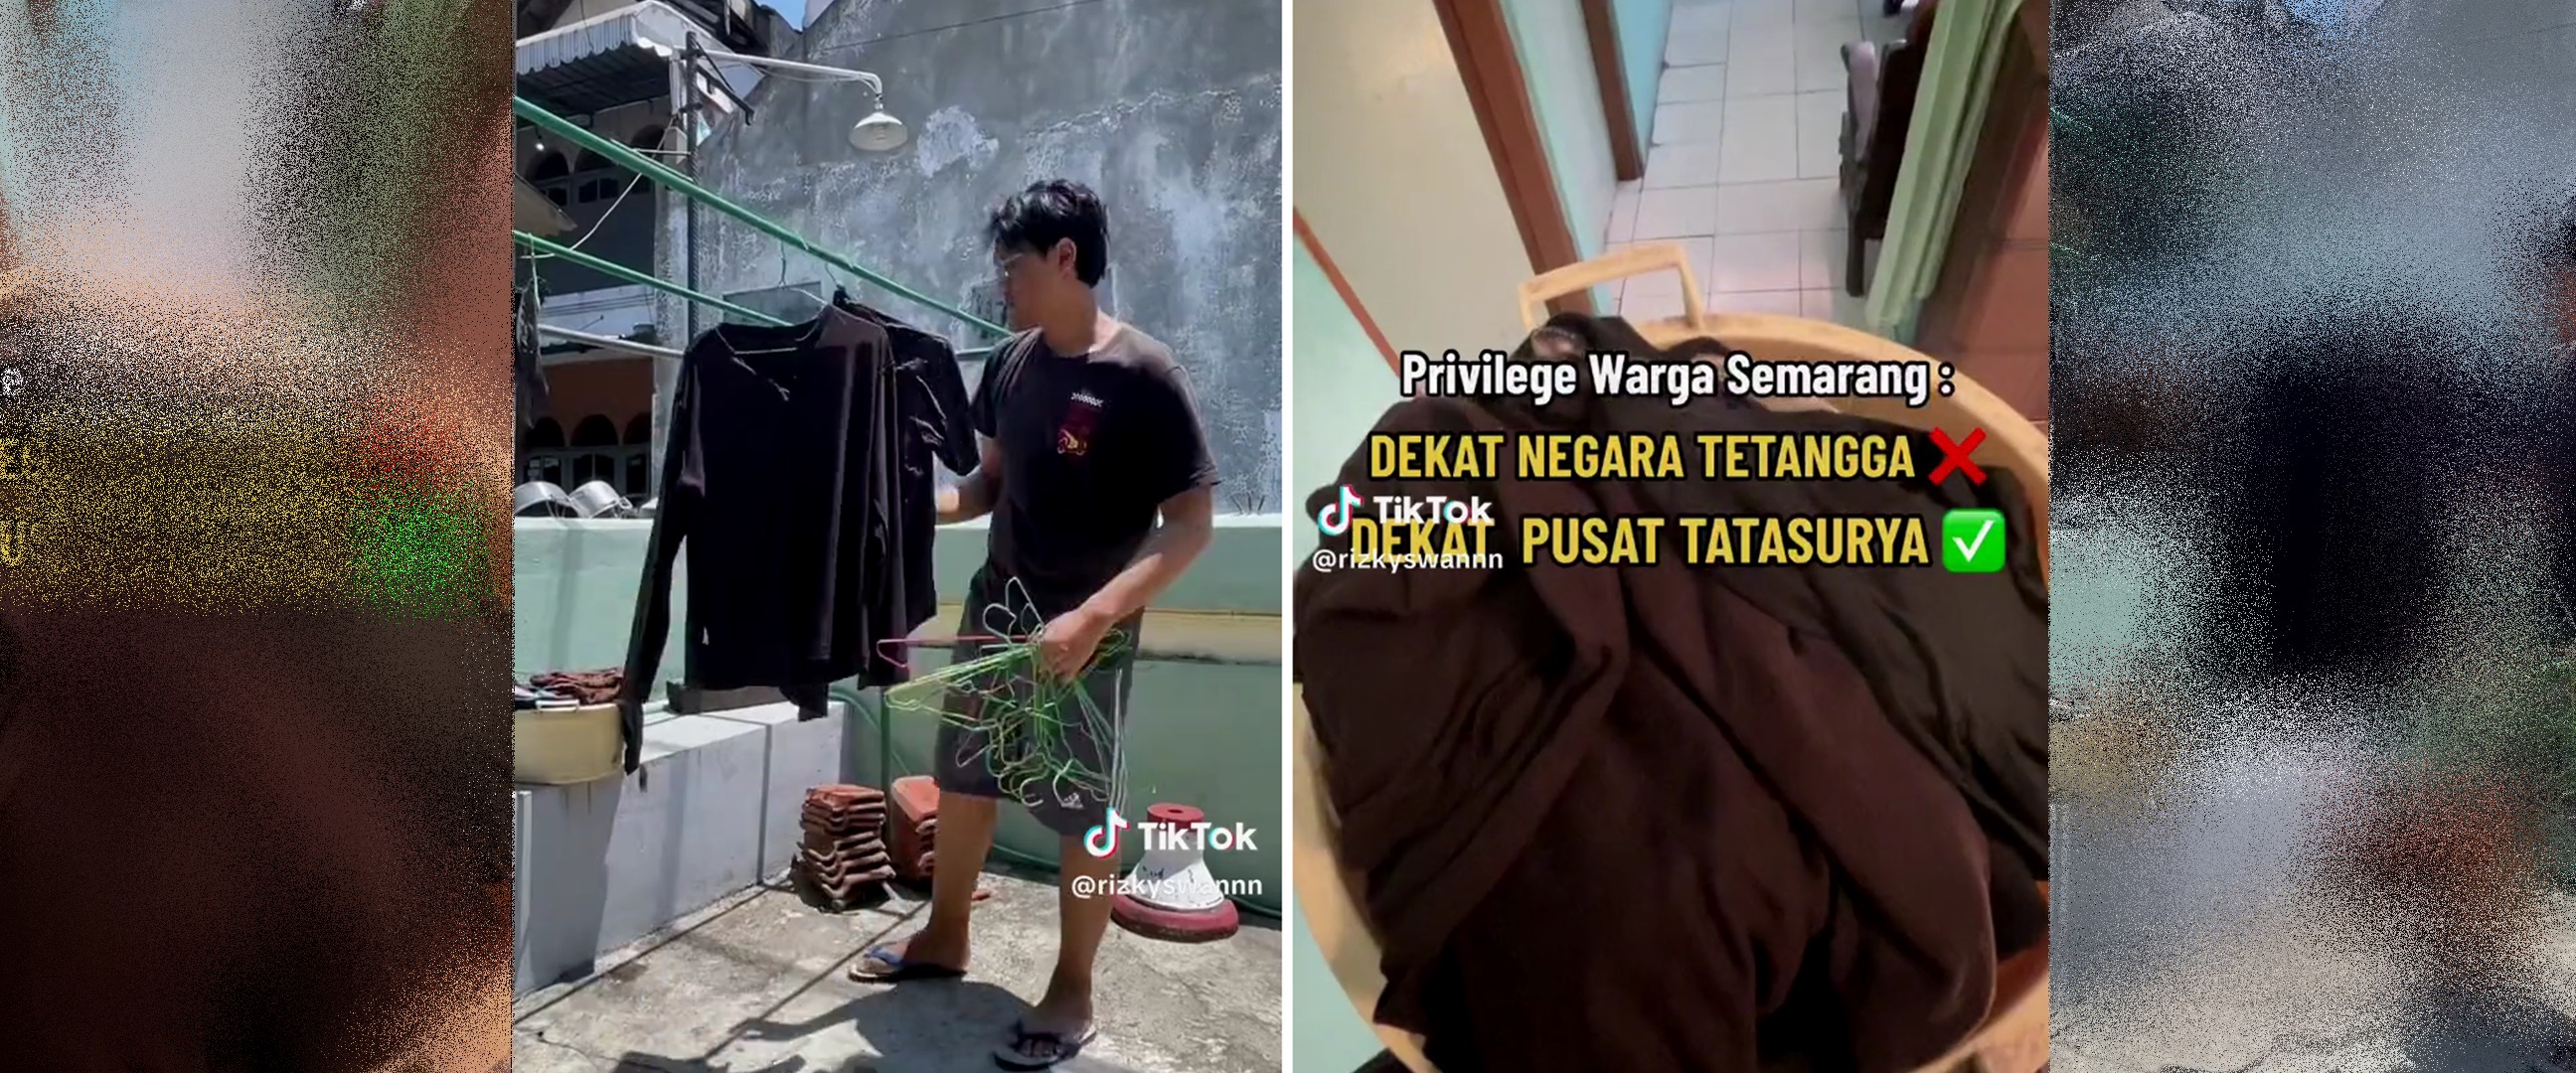 Tinggal di Semarang bak dekat pusat tata surya, pria jemur baju basah auto kering cuma setengah jam